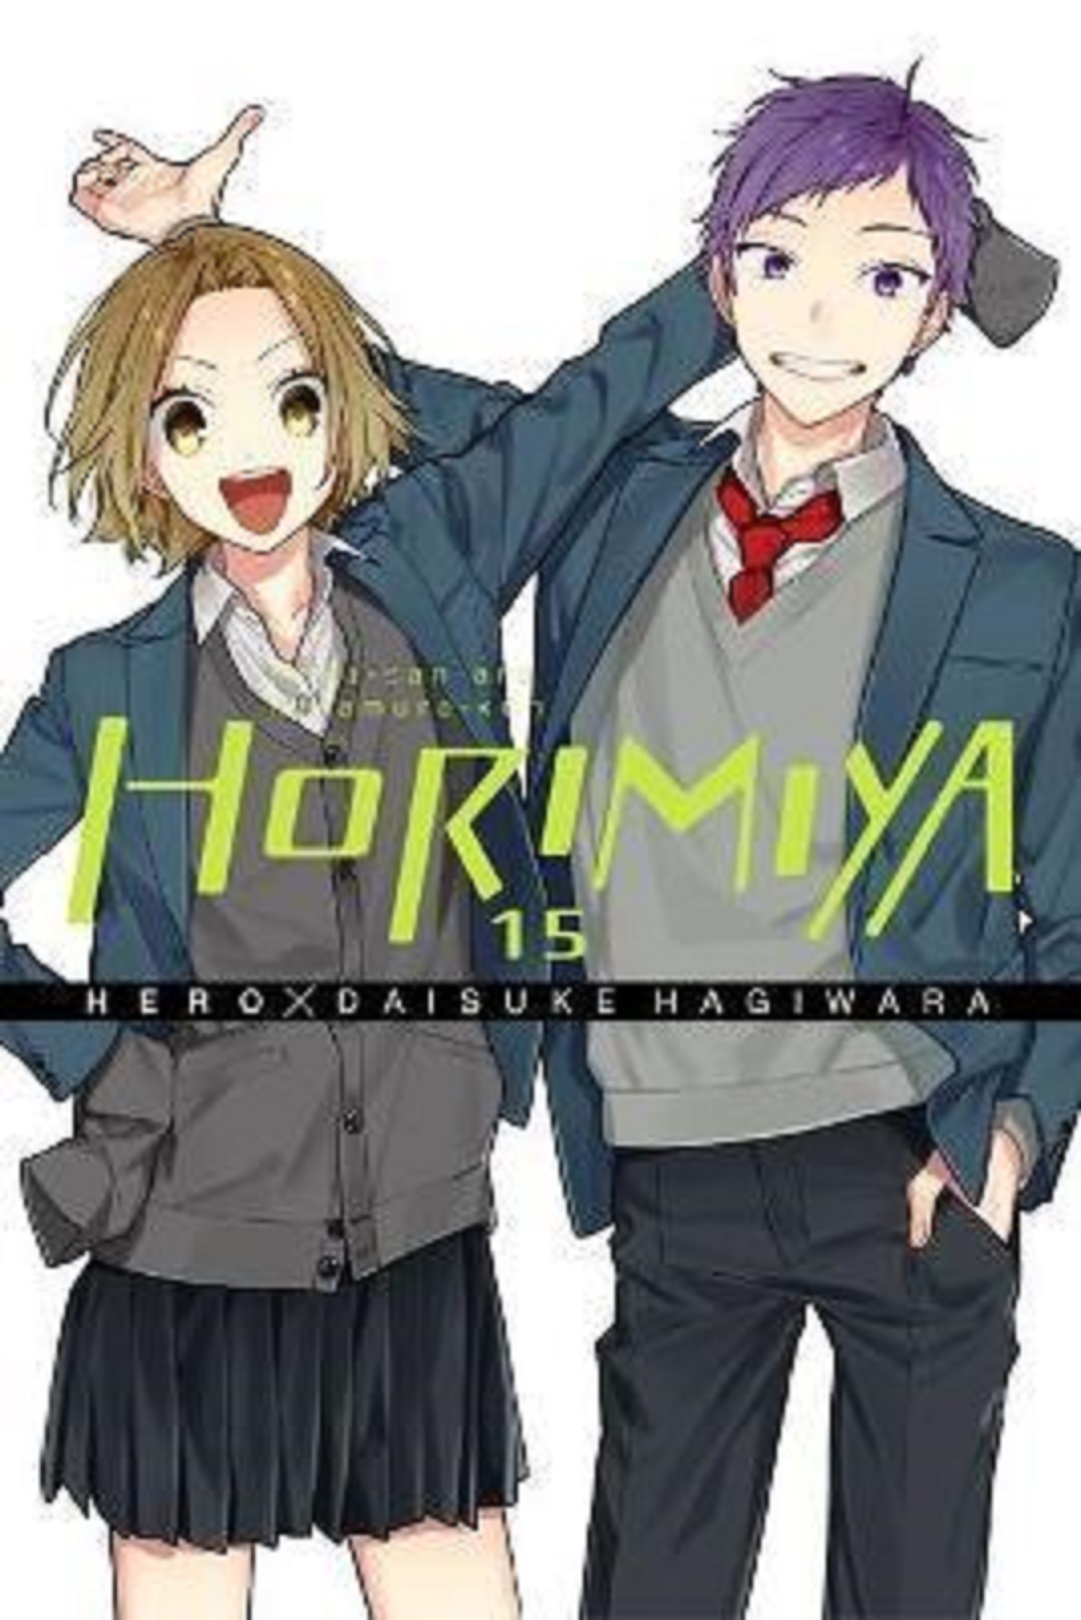 Horimiya - Volume 15 | Daisuke Hagiwara